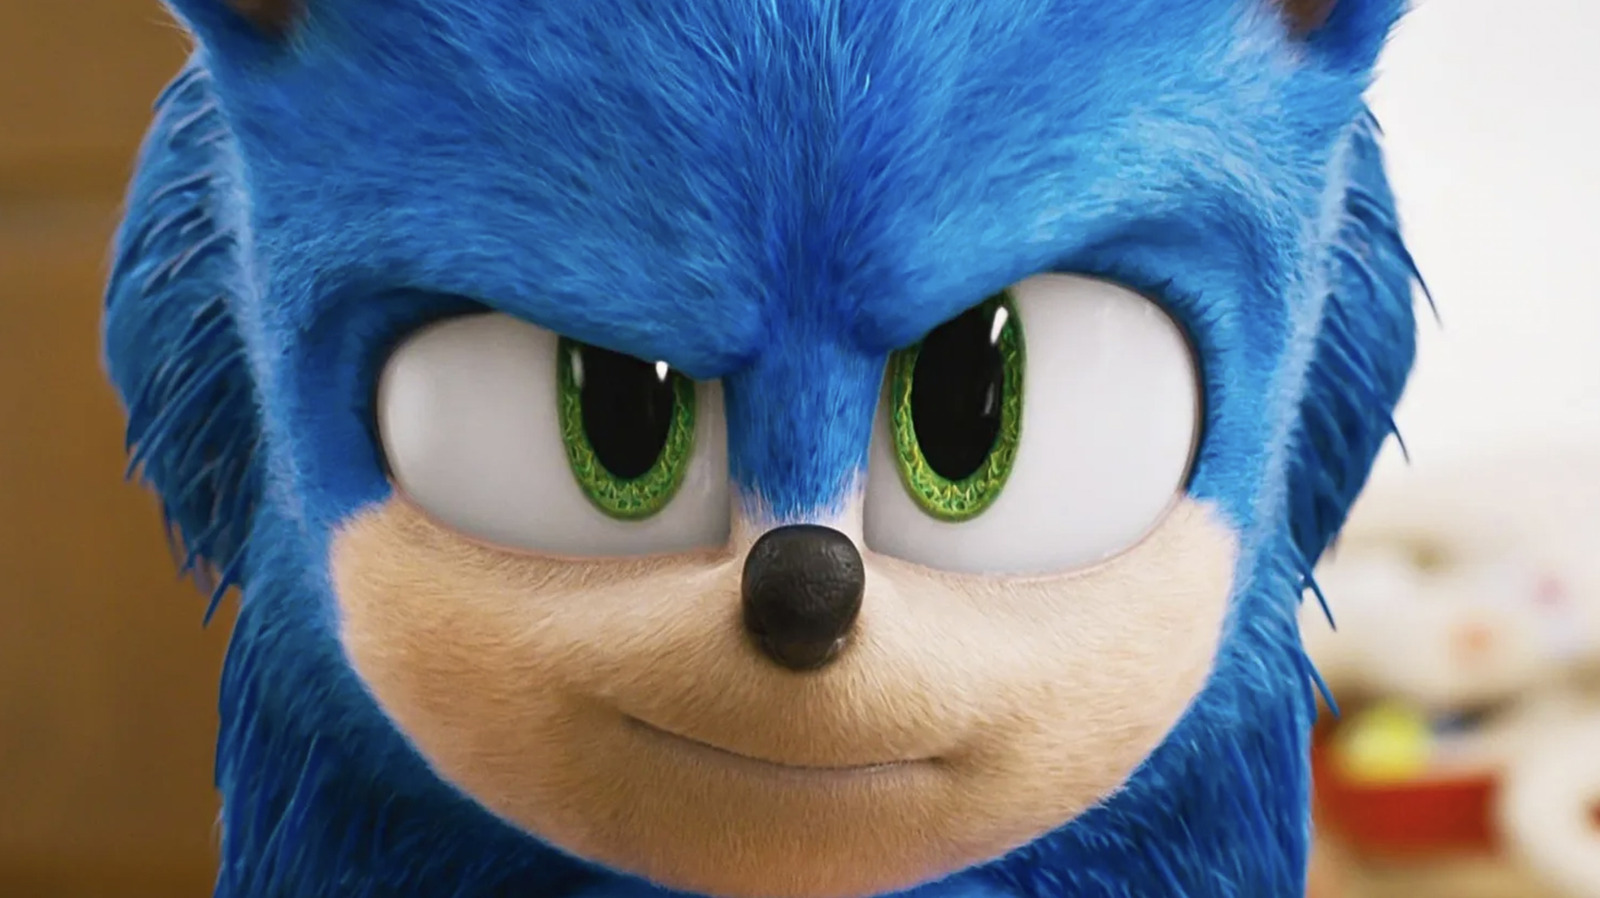 Sonic the Hedgehog 2 Movie Trailer Breakdown